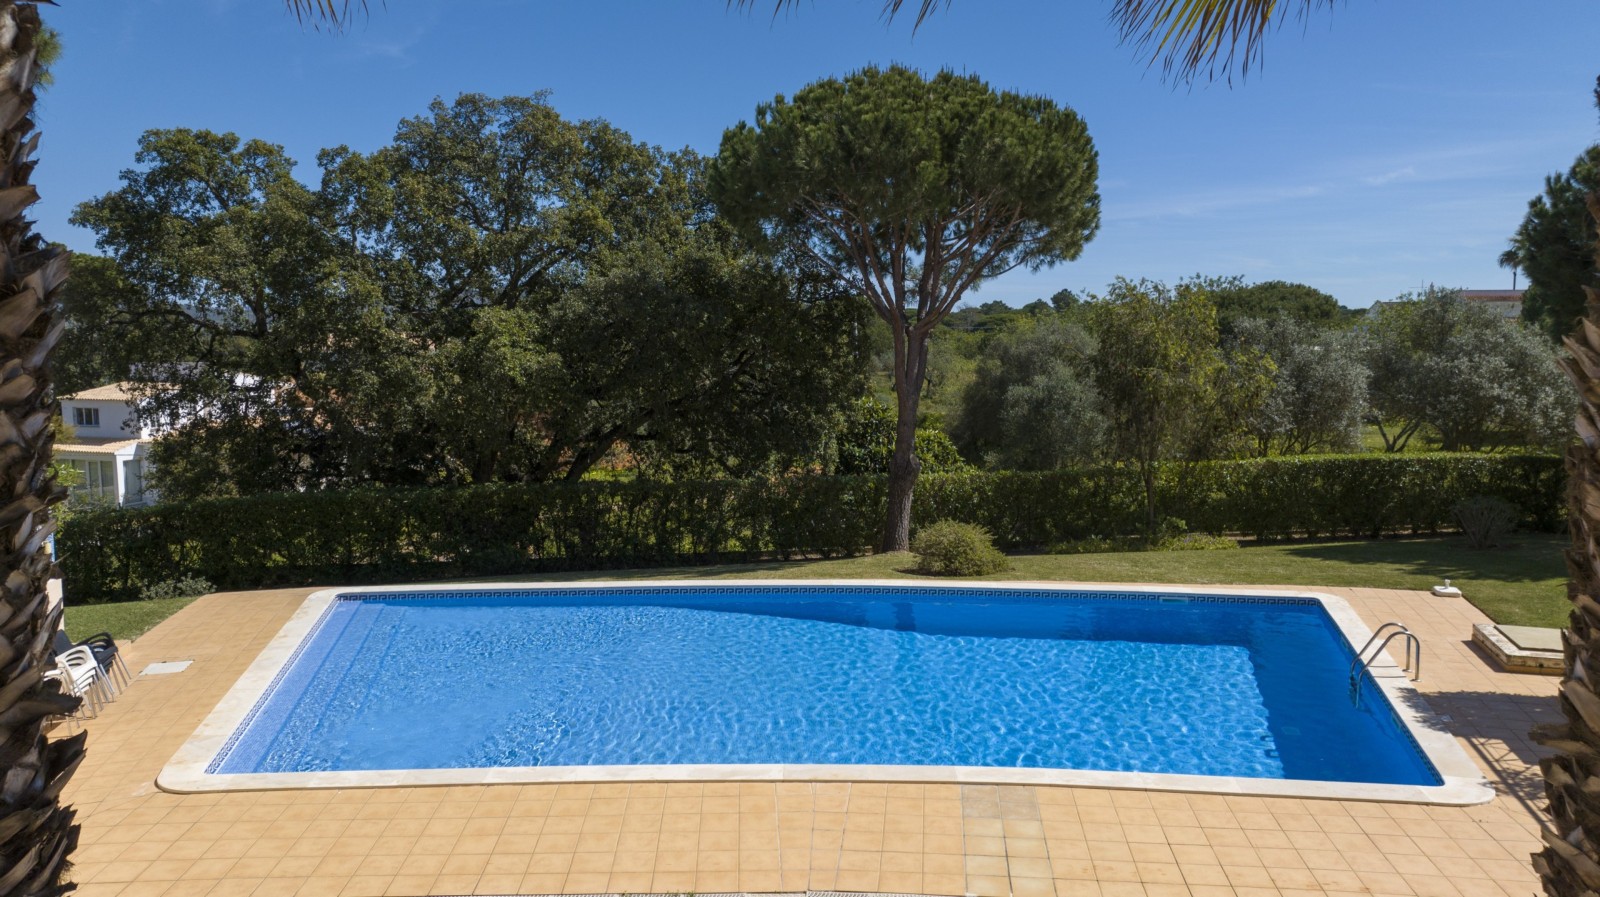 Villa adosada de 4 dormitorios, con piscina, en venta en Vilamoura, Algarve_237491